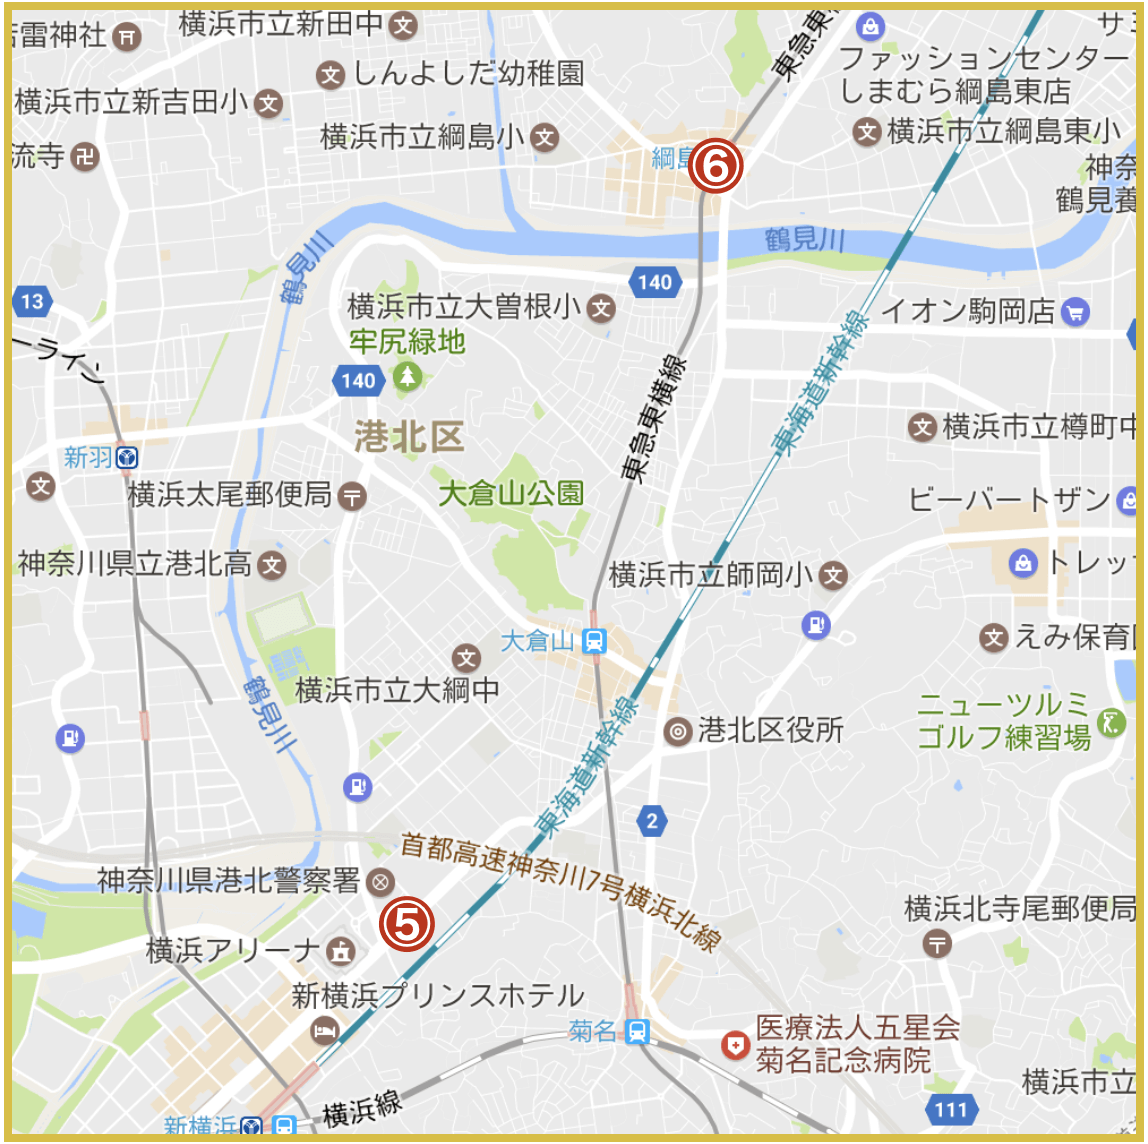 横浜市港北区にあるアイフル店舗・ATMの位置（2020年版）